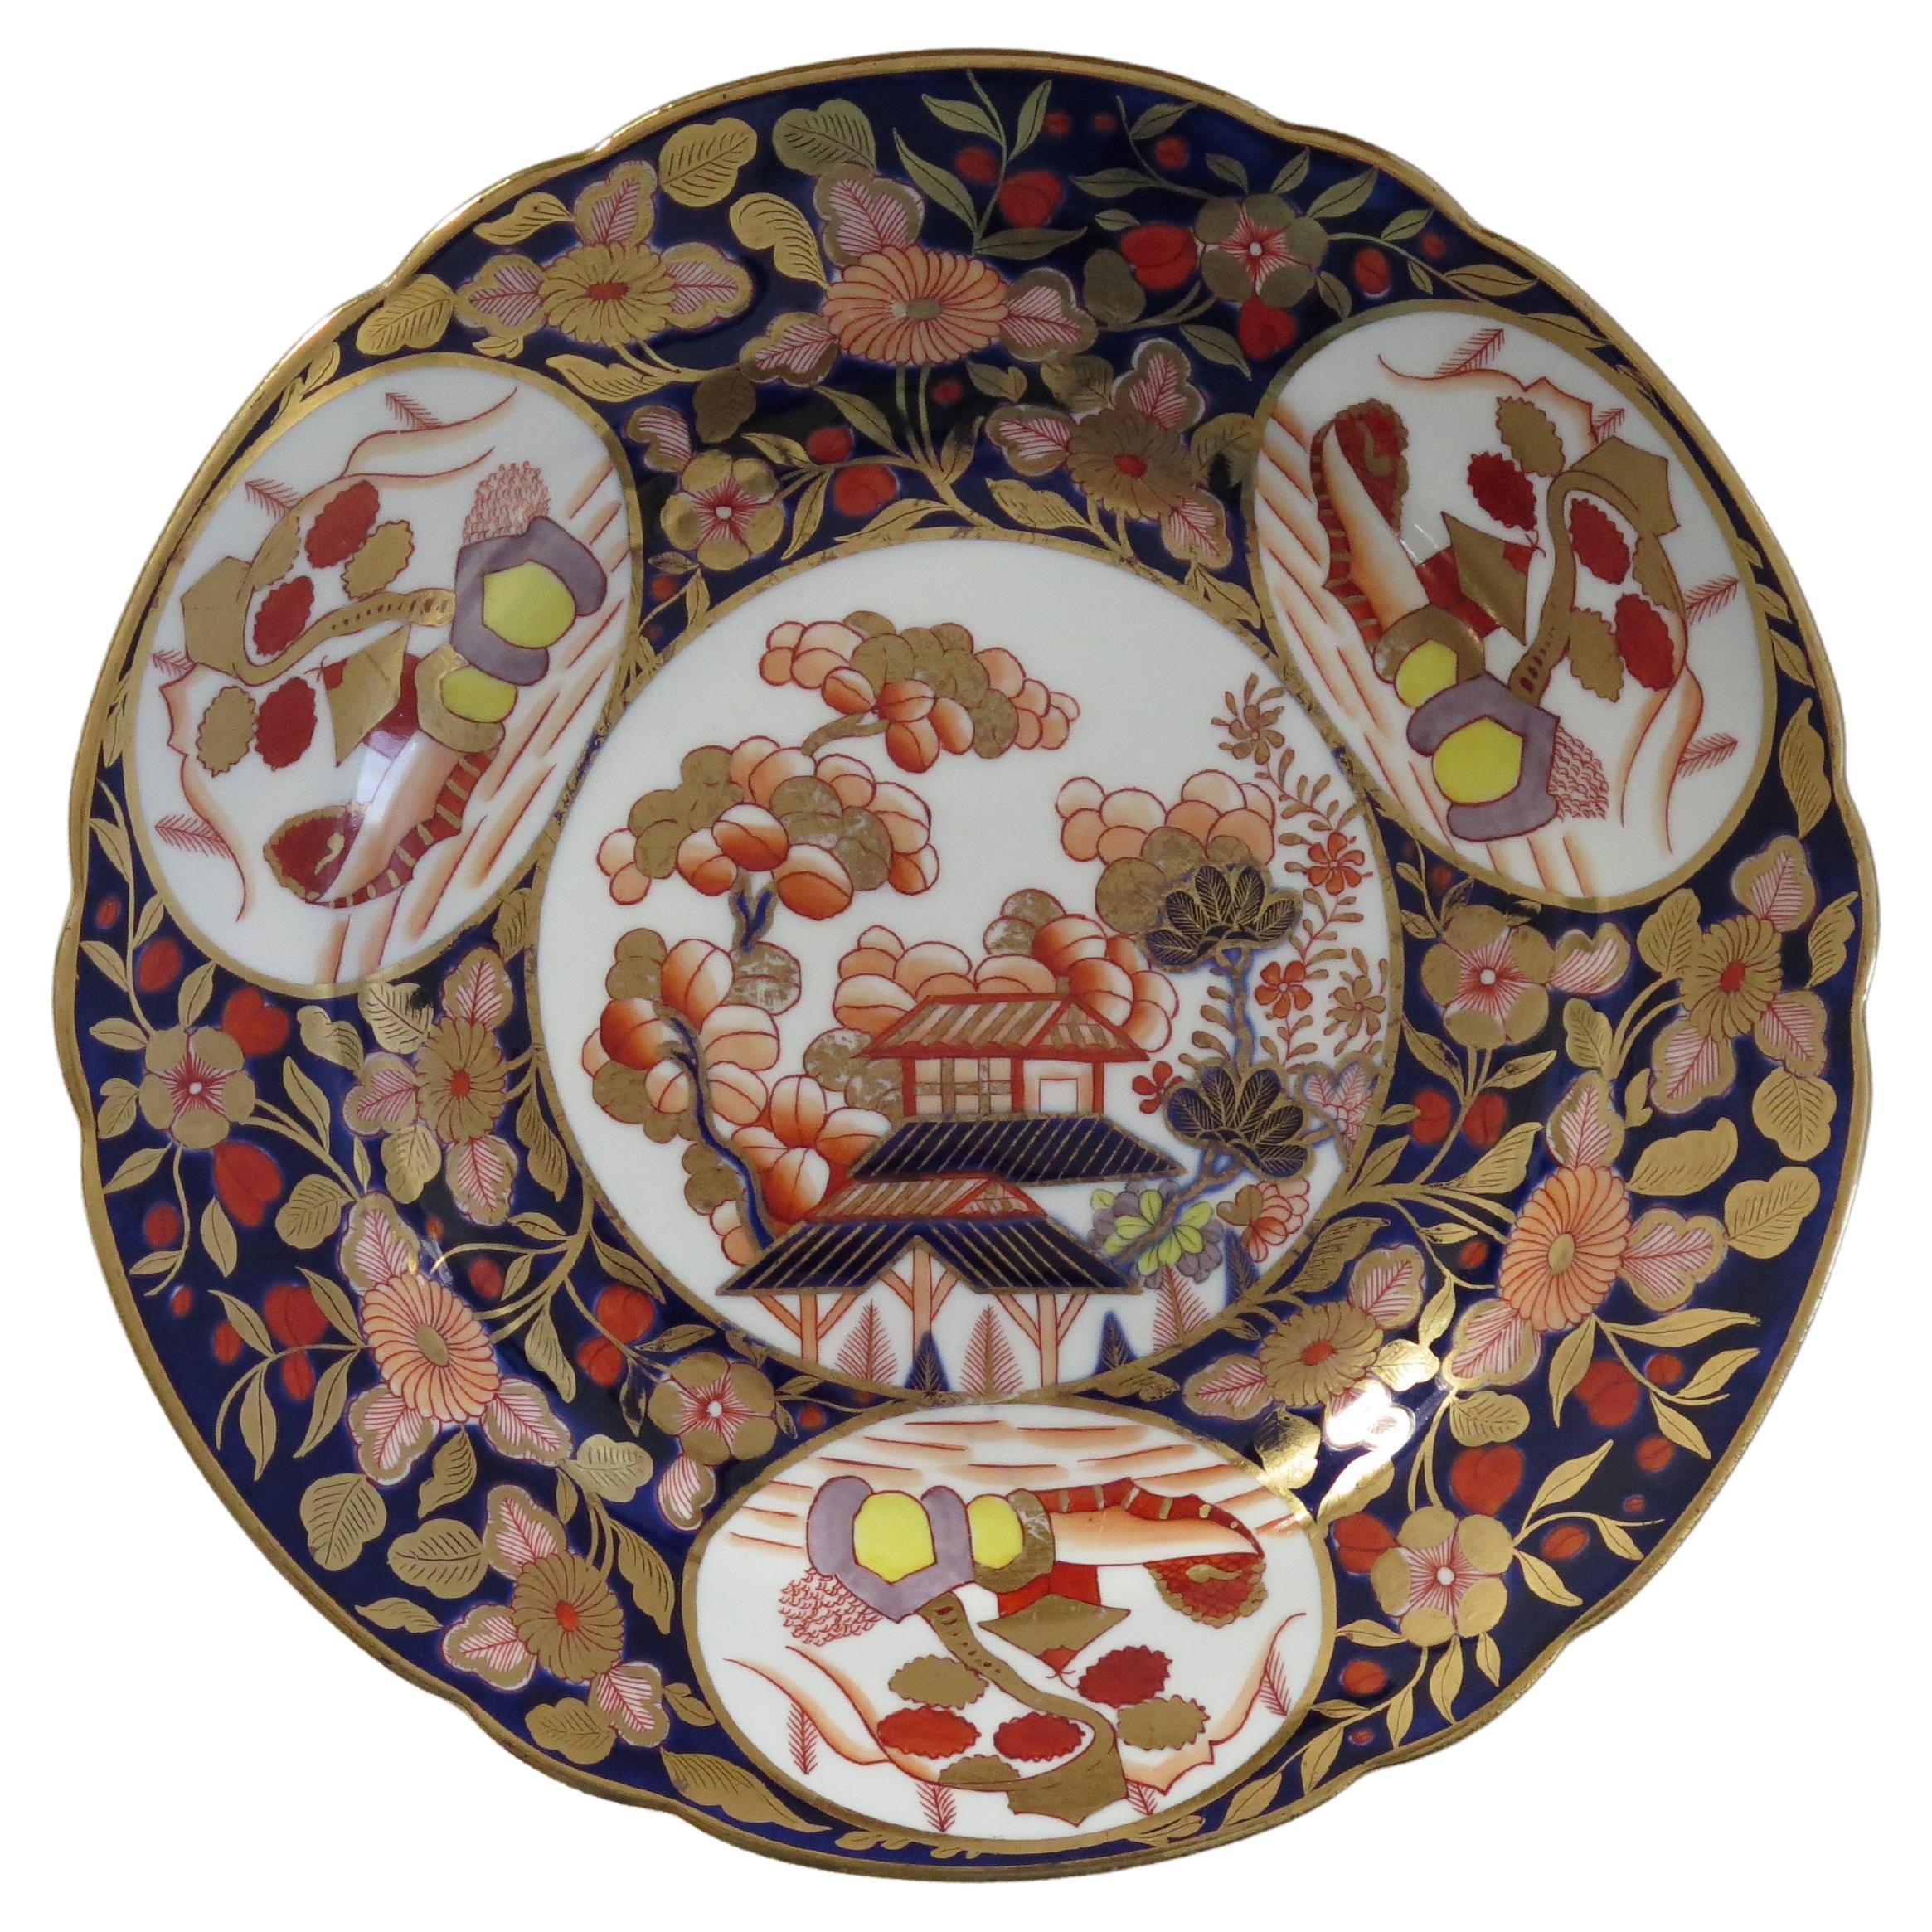 Belle assiette géorgienne de Coalport richement dorée et peinte à la main 1949, vers 1810